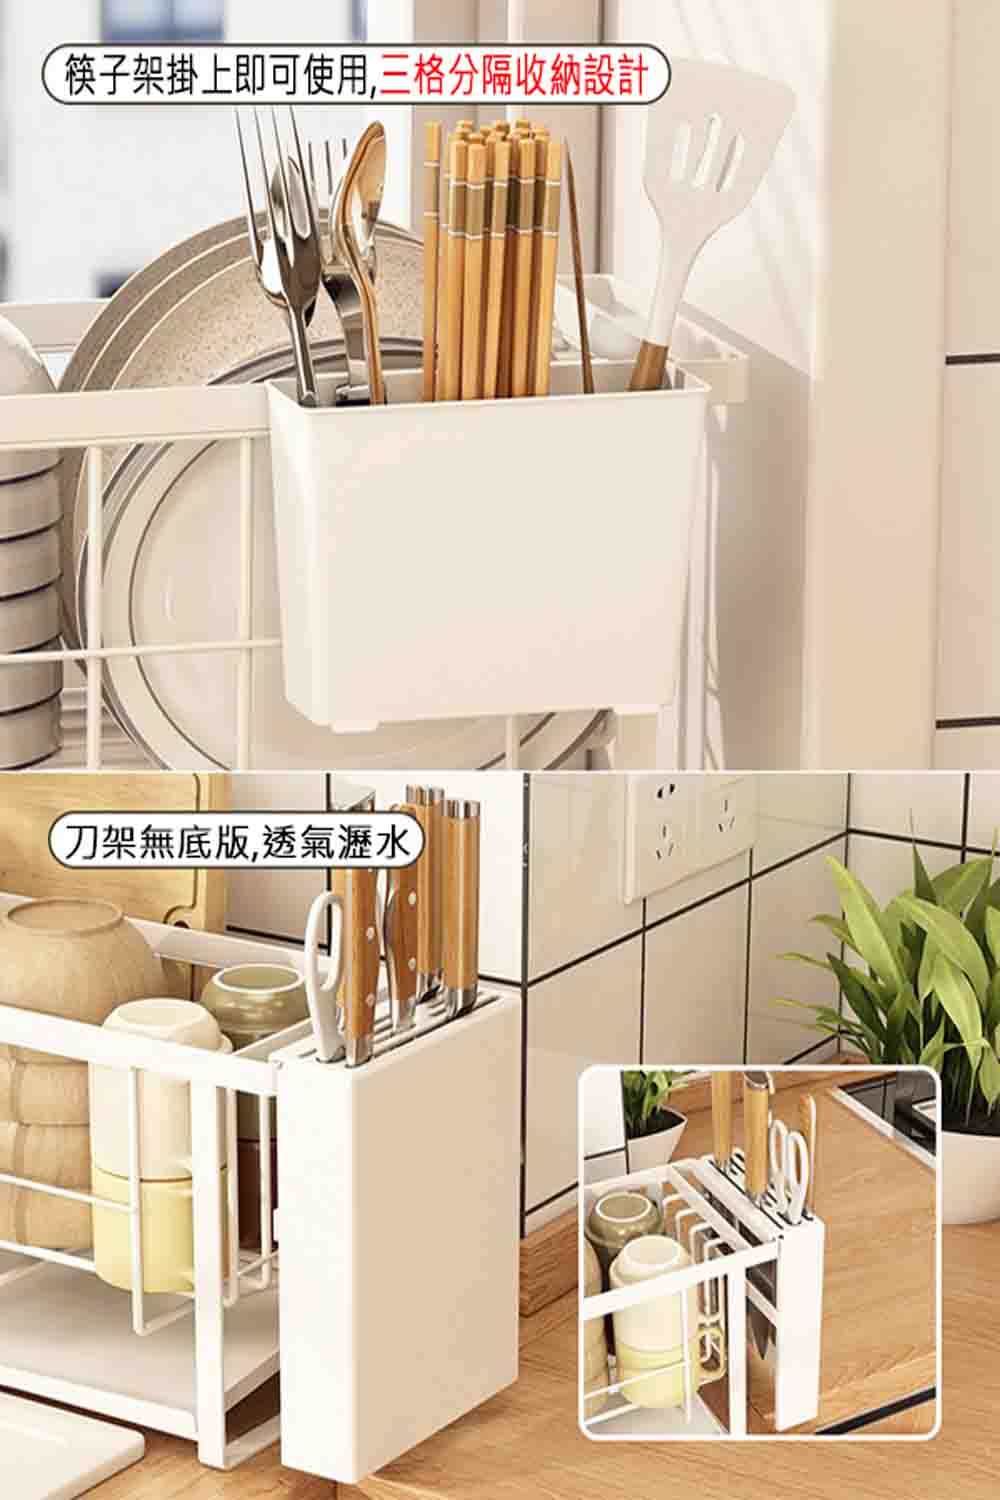 寶盒百貨 免安裝 日式檯面窄款廚房瀝水架 水槽邊碗碟架(餐具